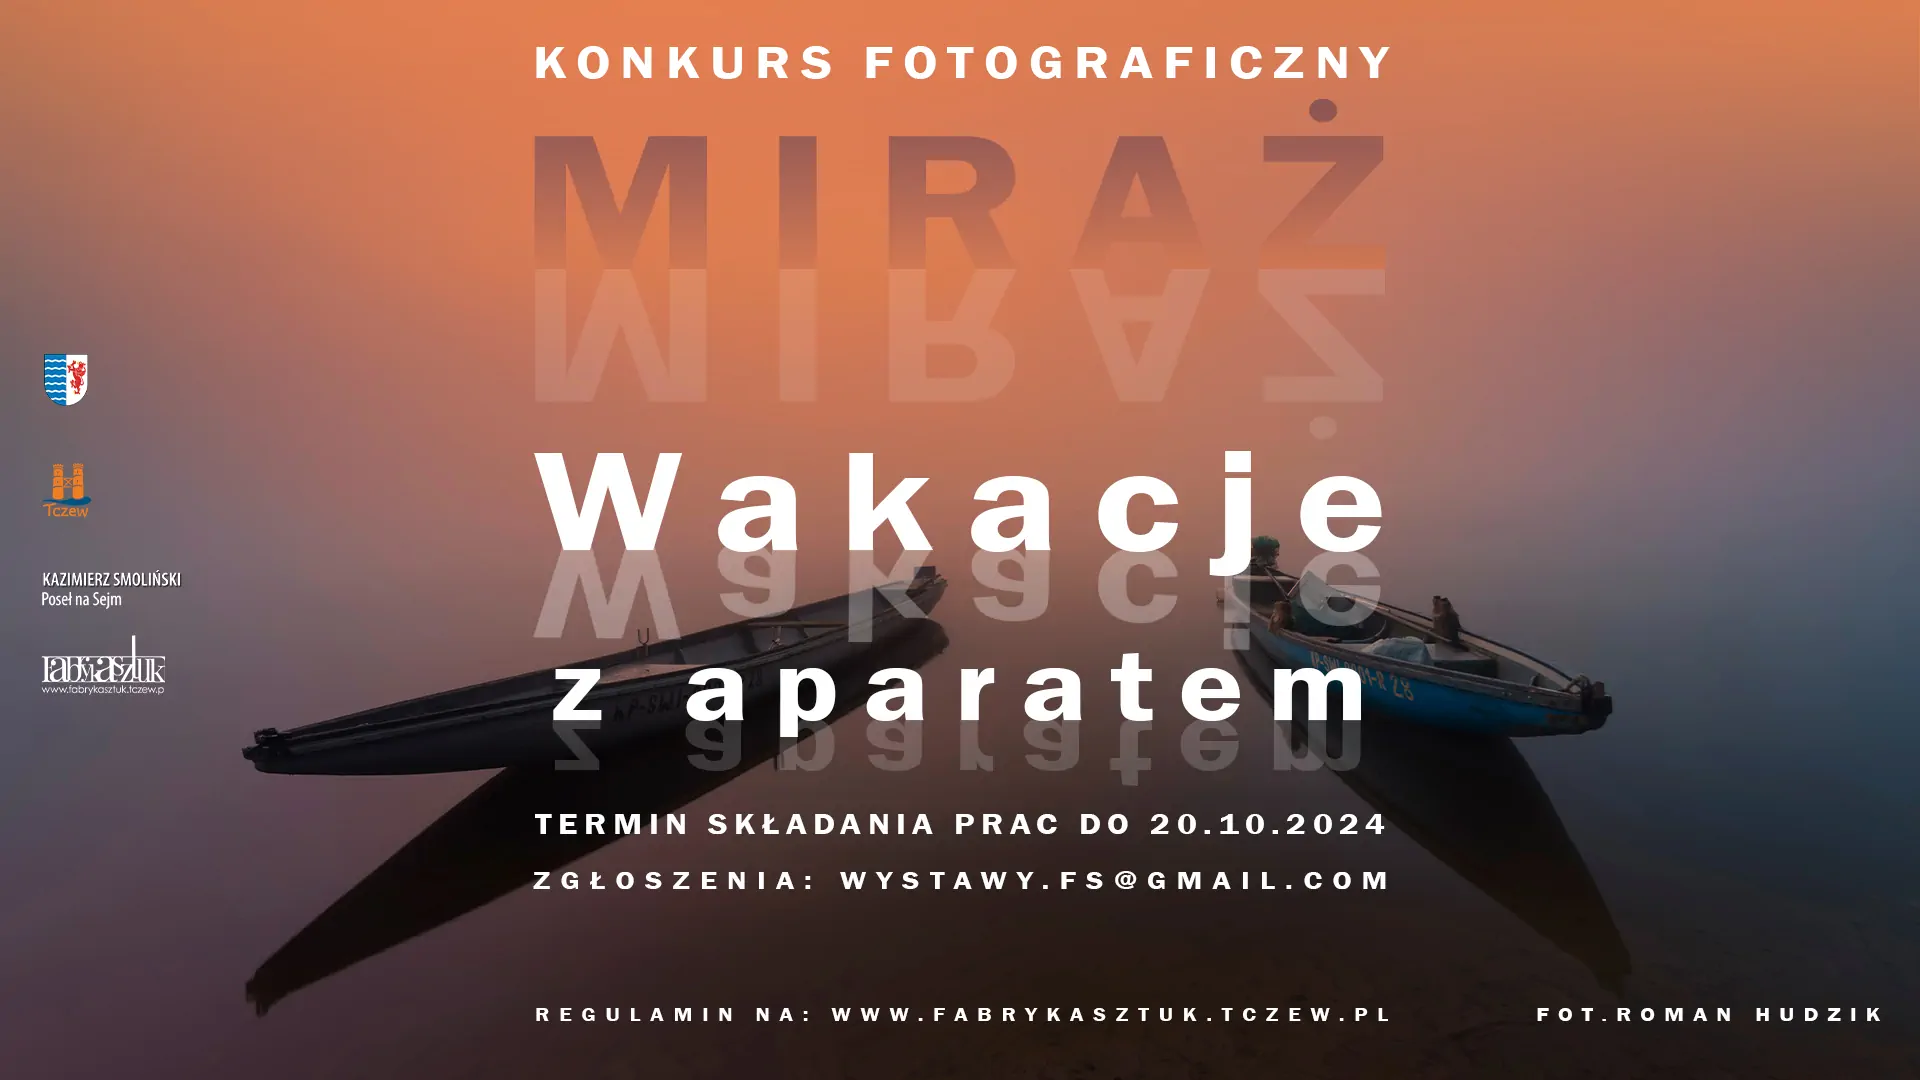 Plakat informacyjny konkursu fotograficznego pt. "Wakacje z aparatem" z dwiema łódkami odbijającymi się w tafli wody.